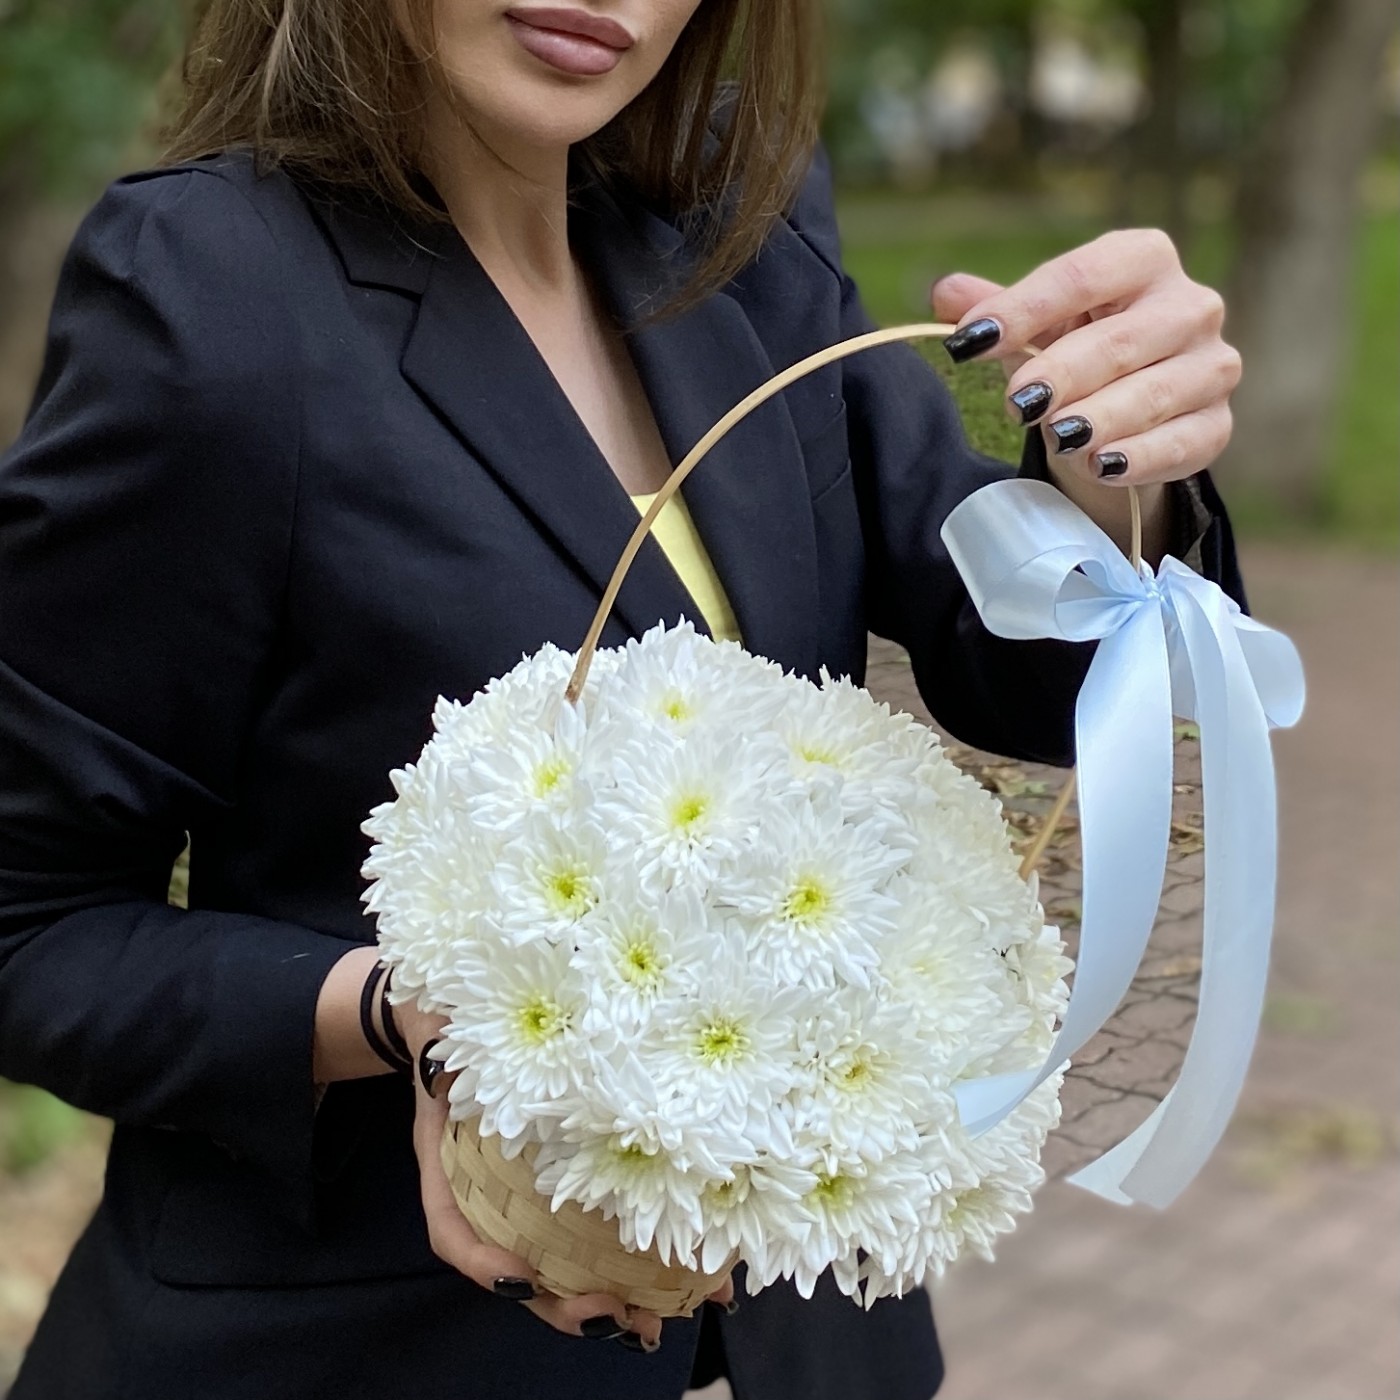 Кустовая белая хризантема Балтика в корзине